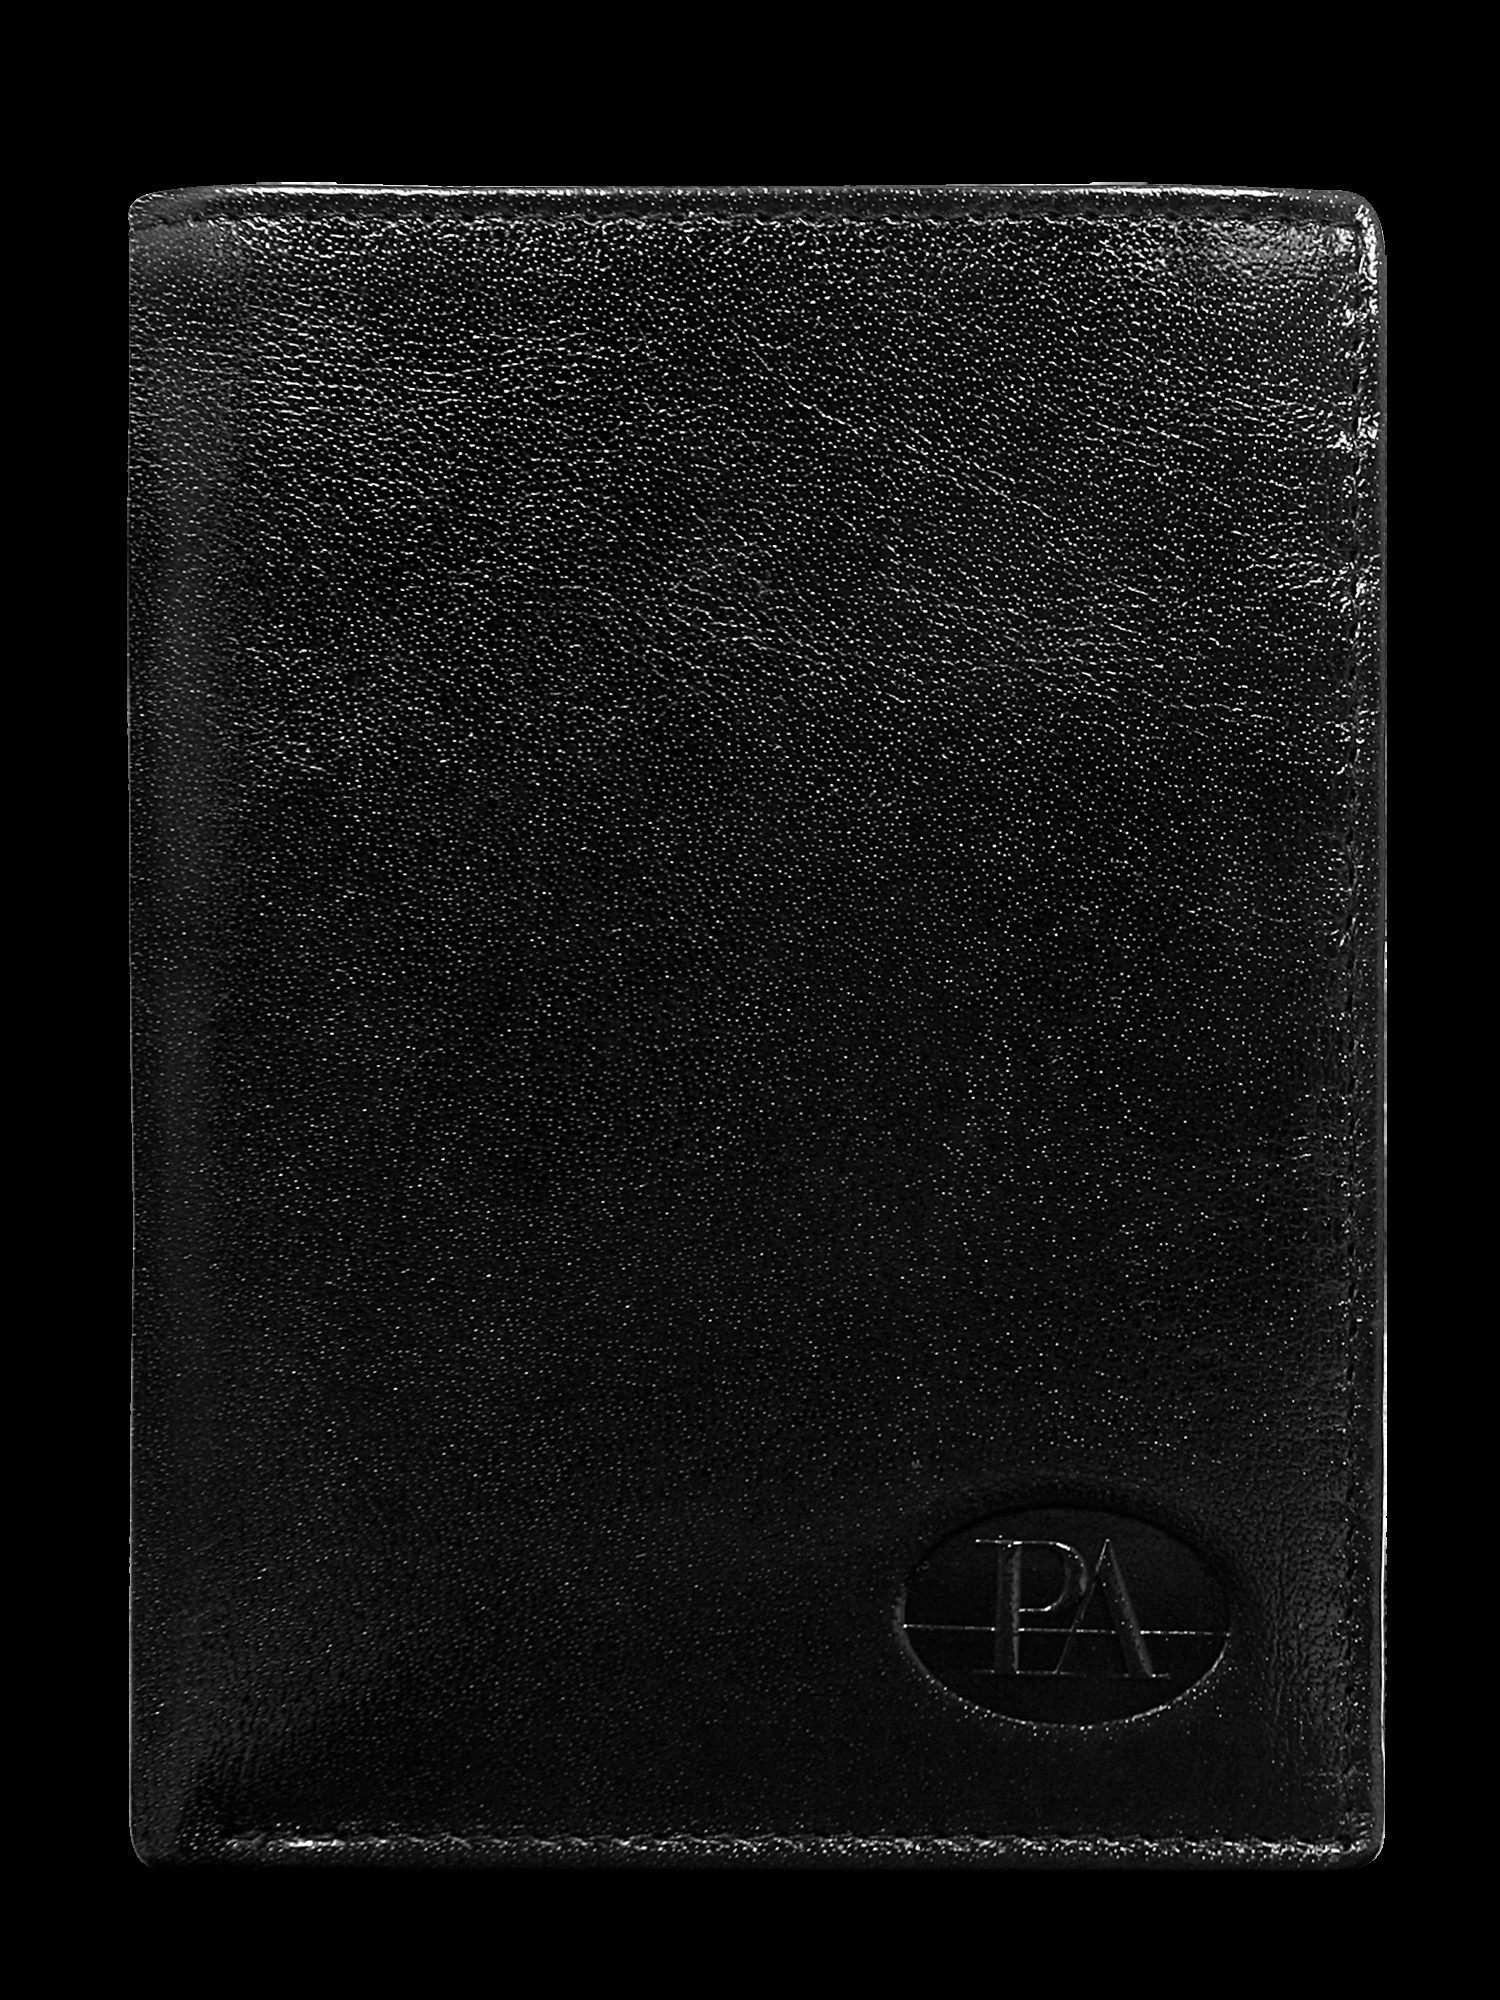 Peněženka CE PR PW 003 model 14834401 černá jedna velikost - FPrice